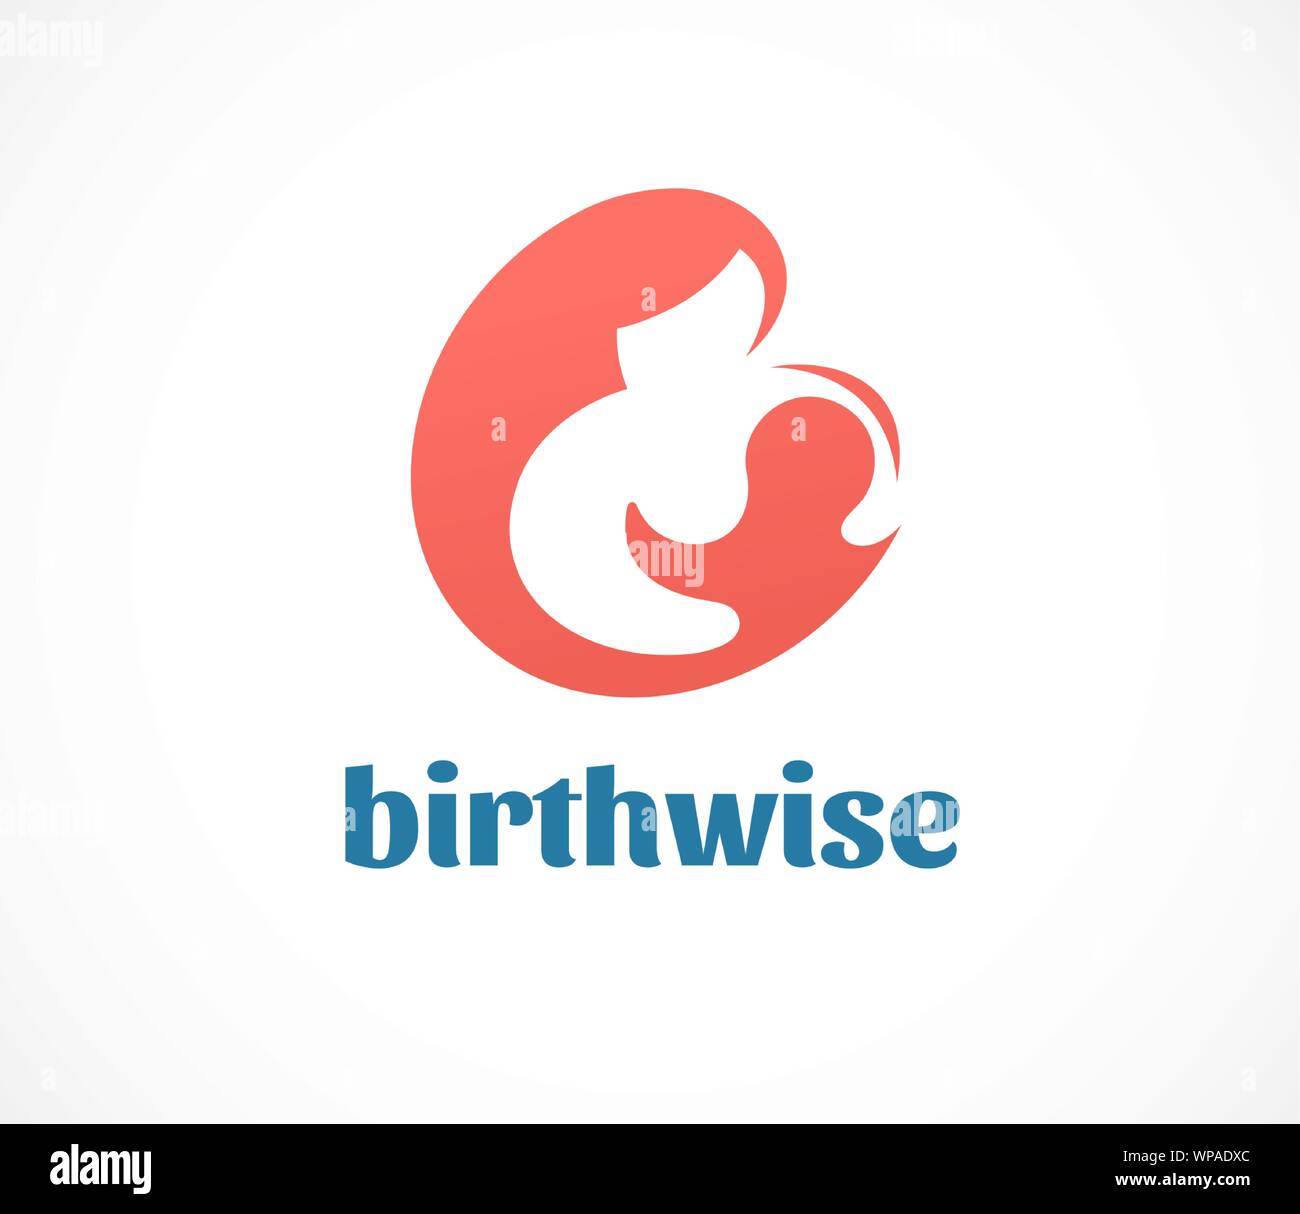 Naissance, grossesse, famille et soins bébé logo et symbole. Conception vectorielle Illustration de Vecteur